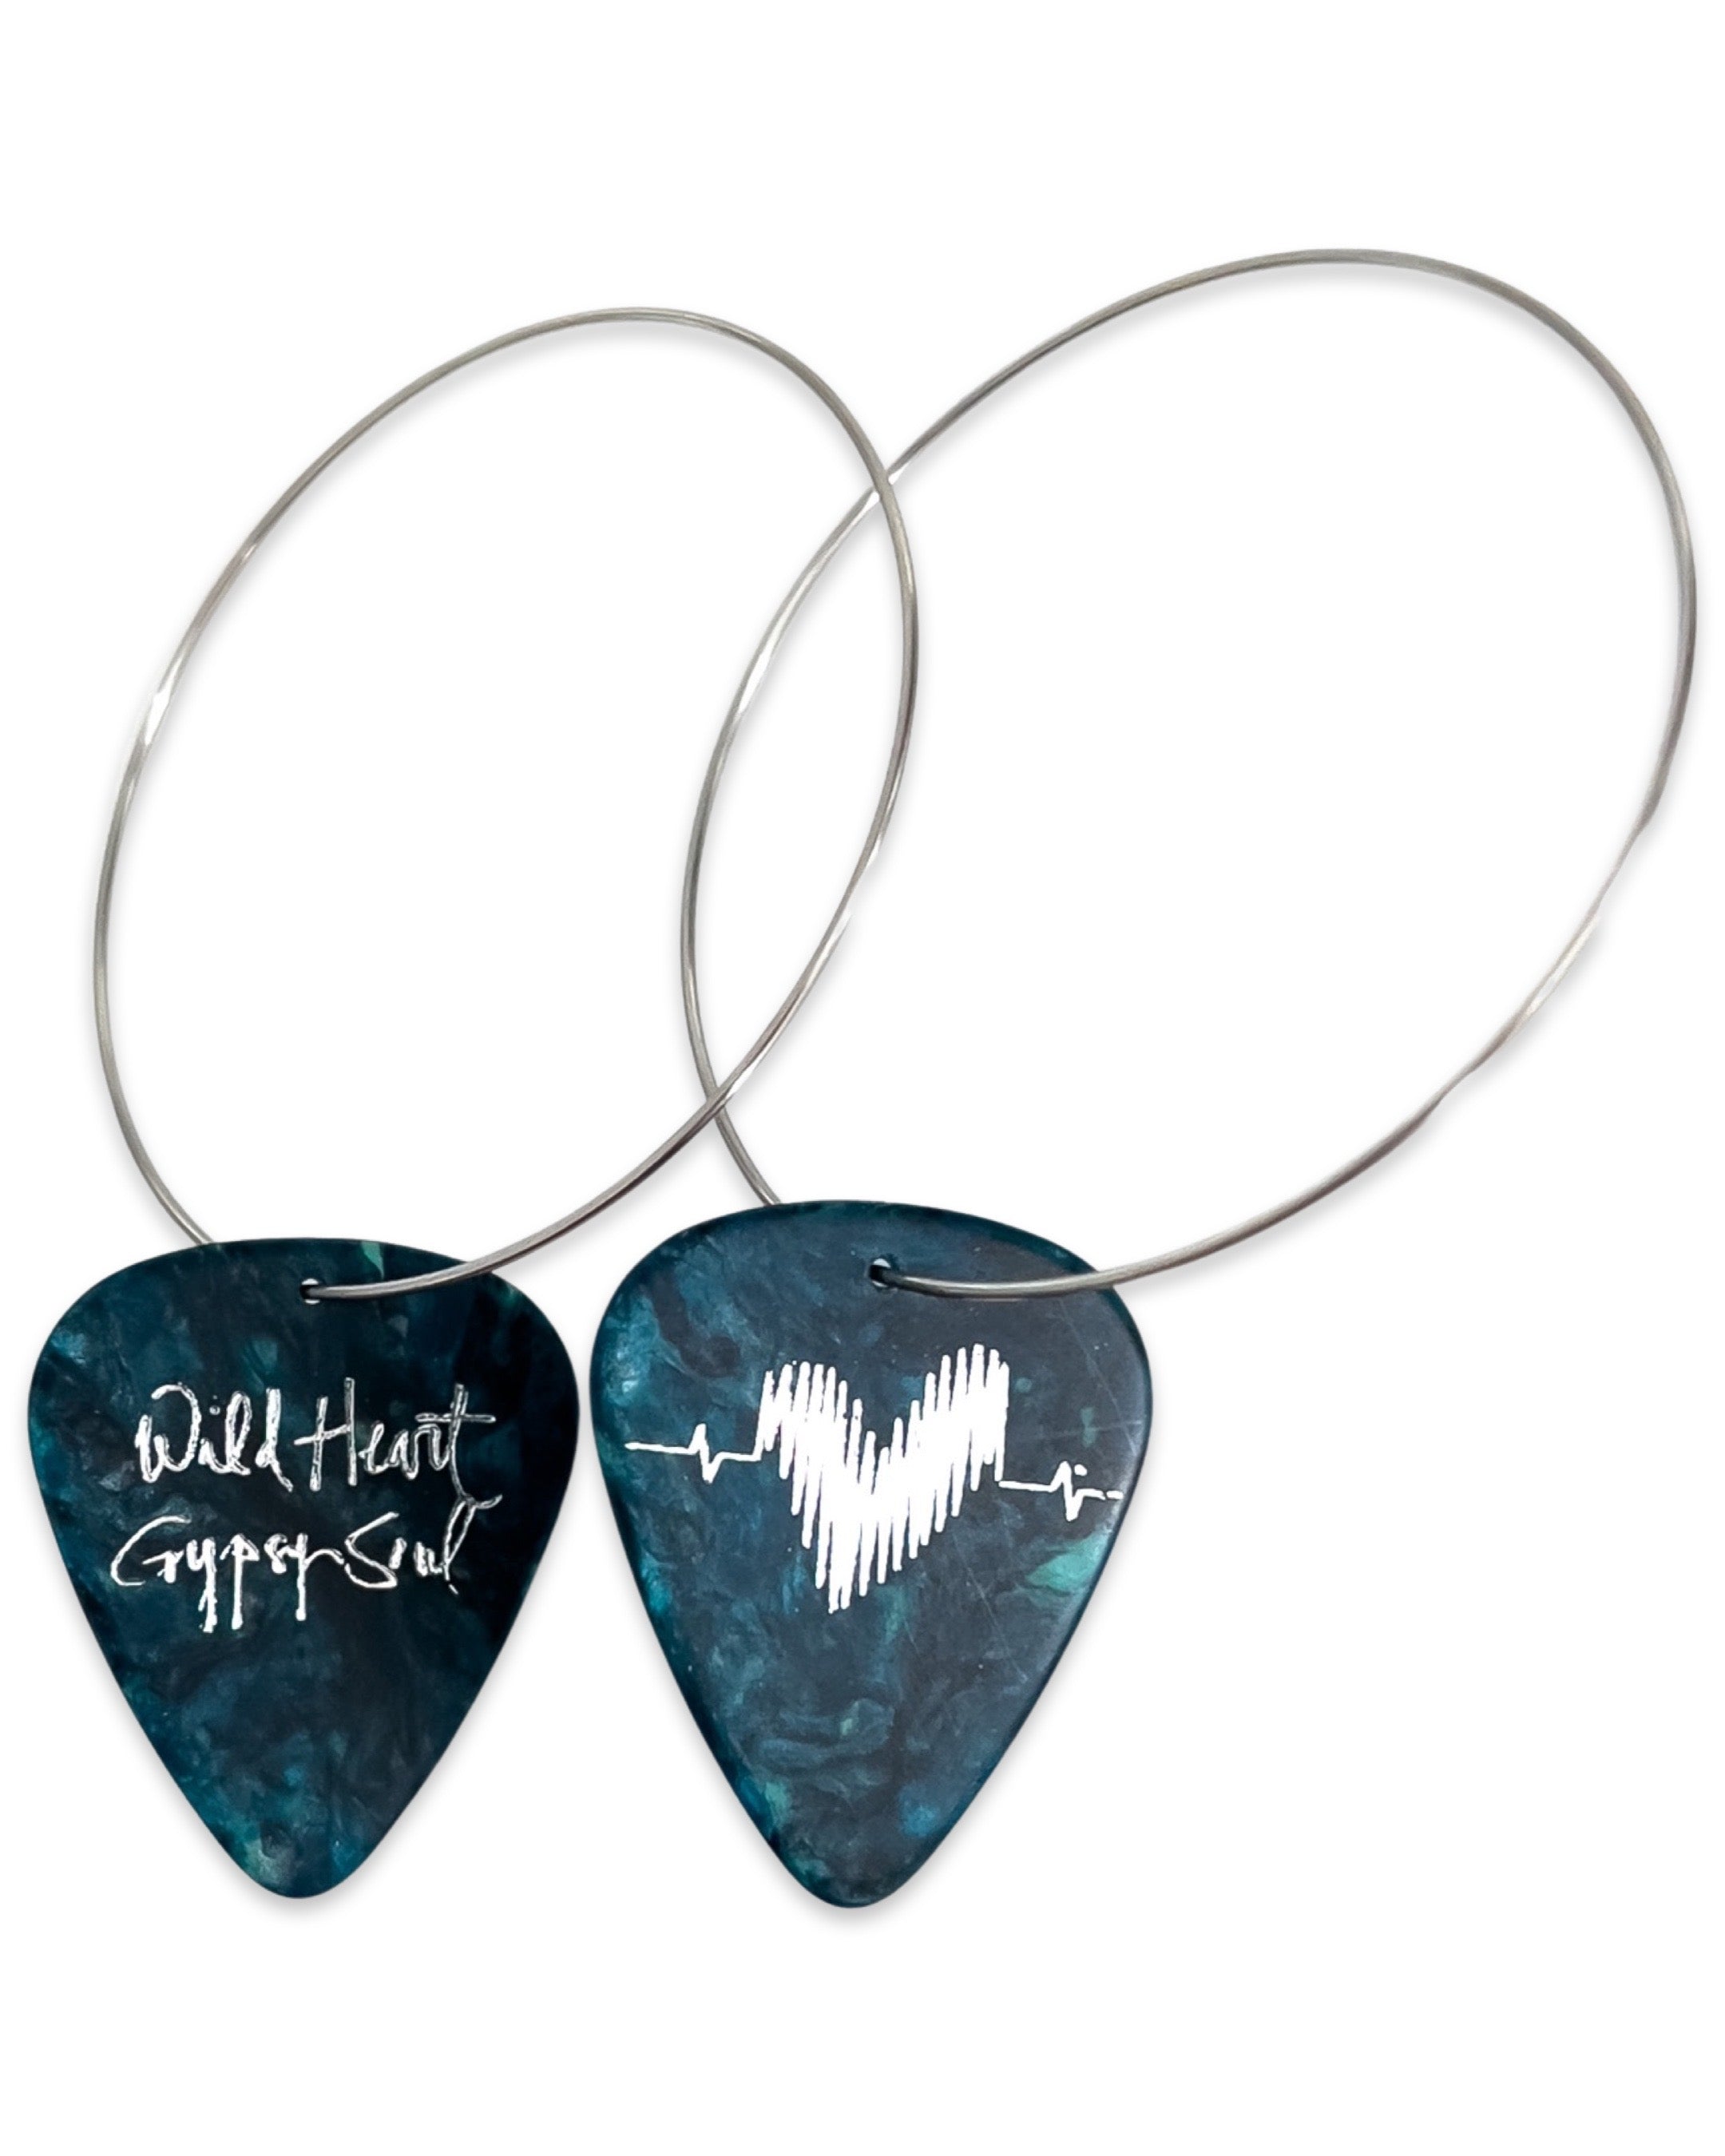 Wild Heart Gypsy Soul Turquoise Single Guitar Pick Earrings